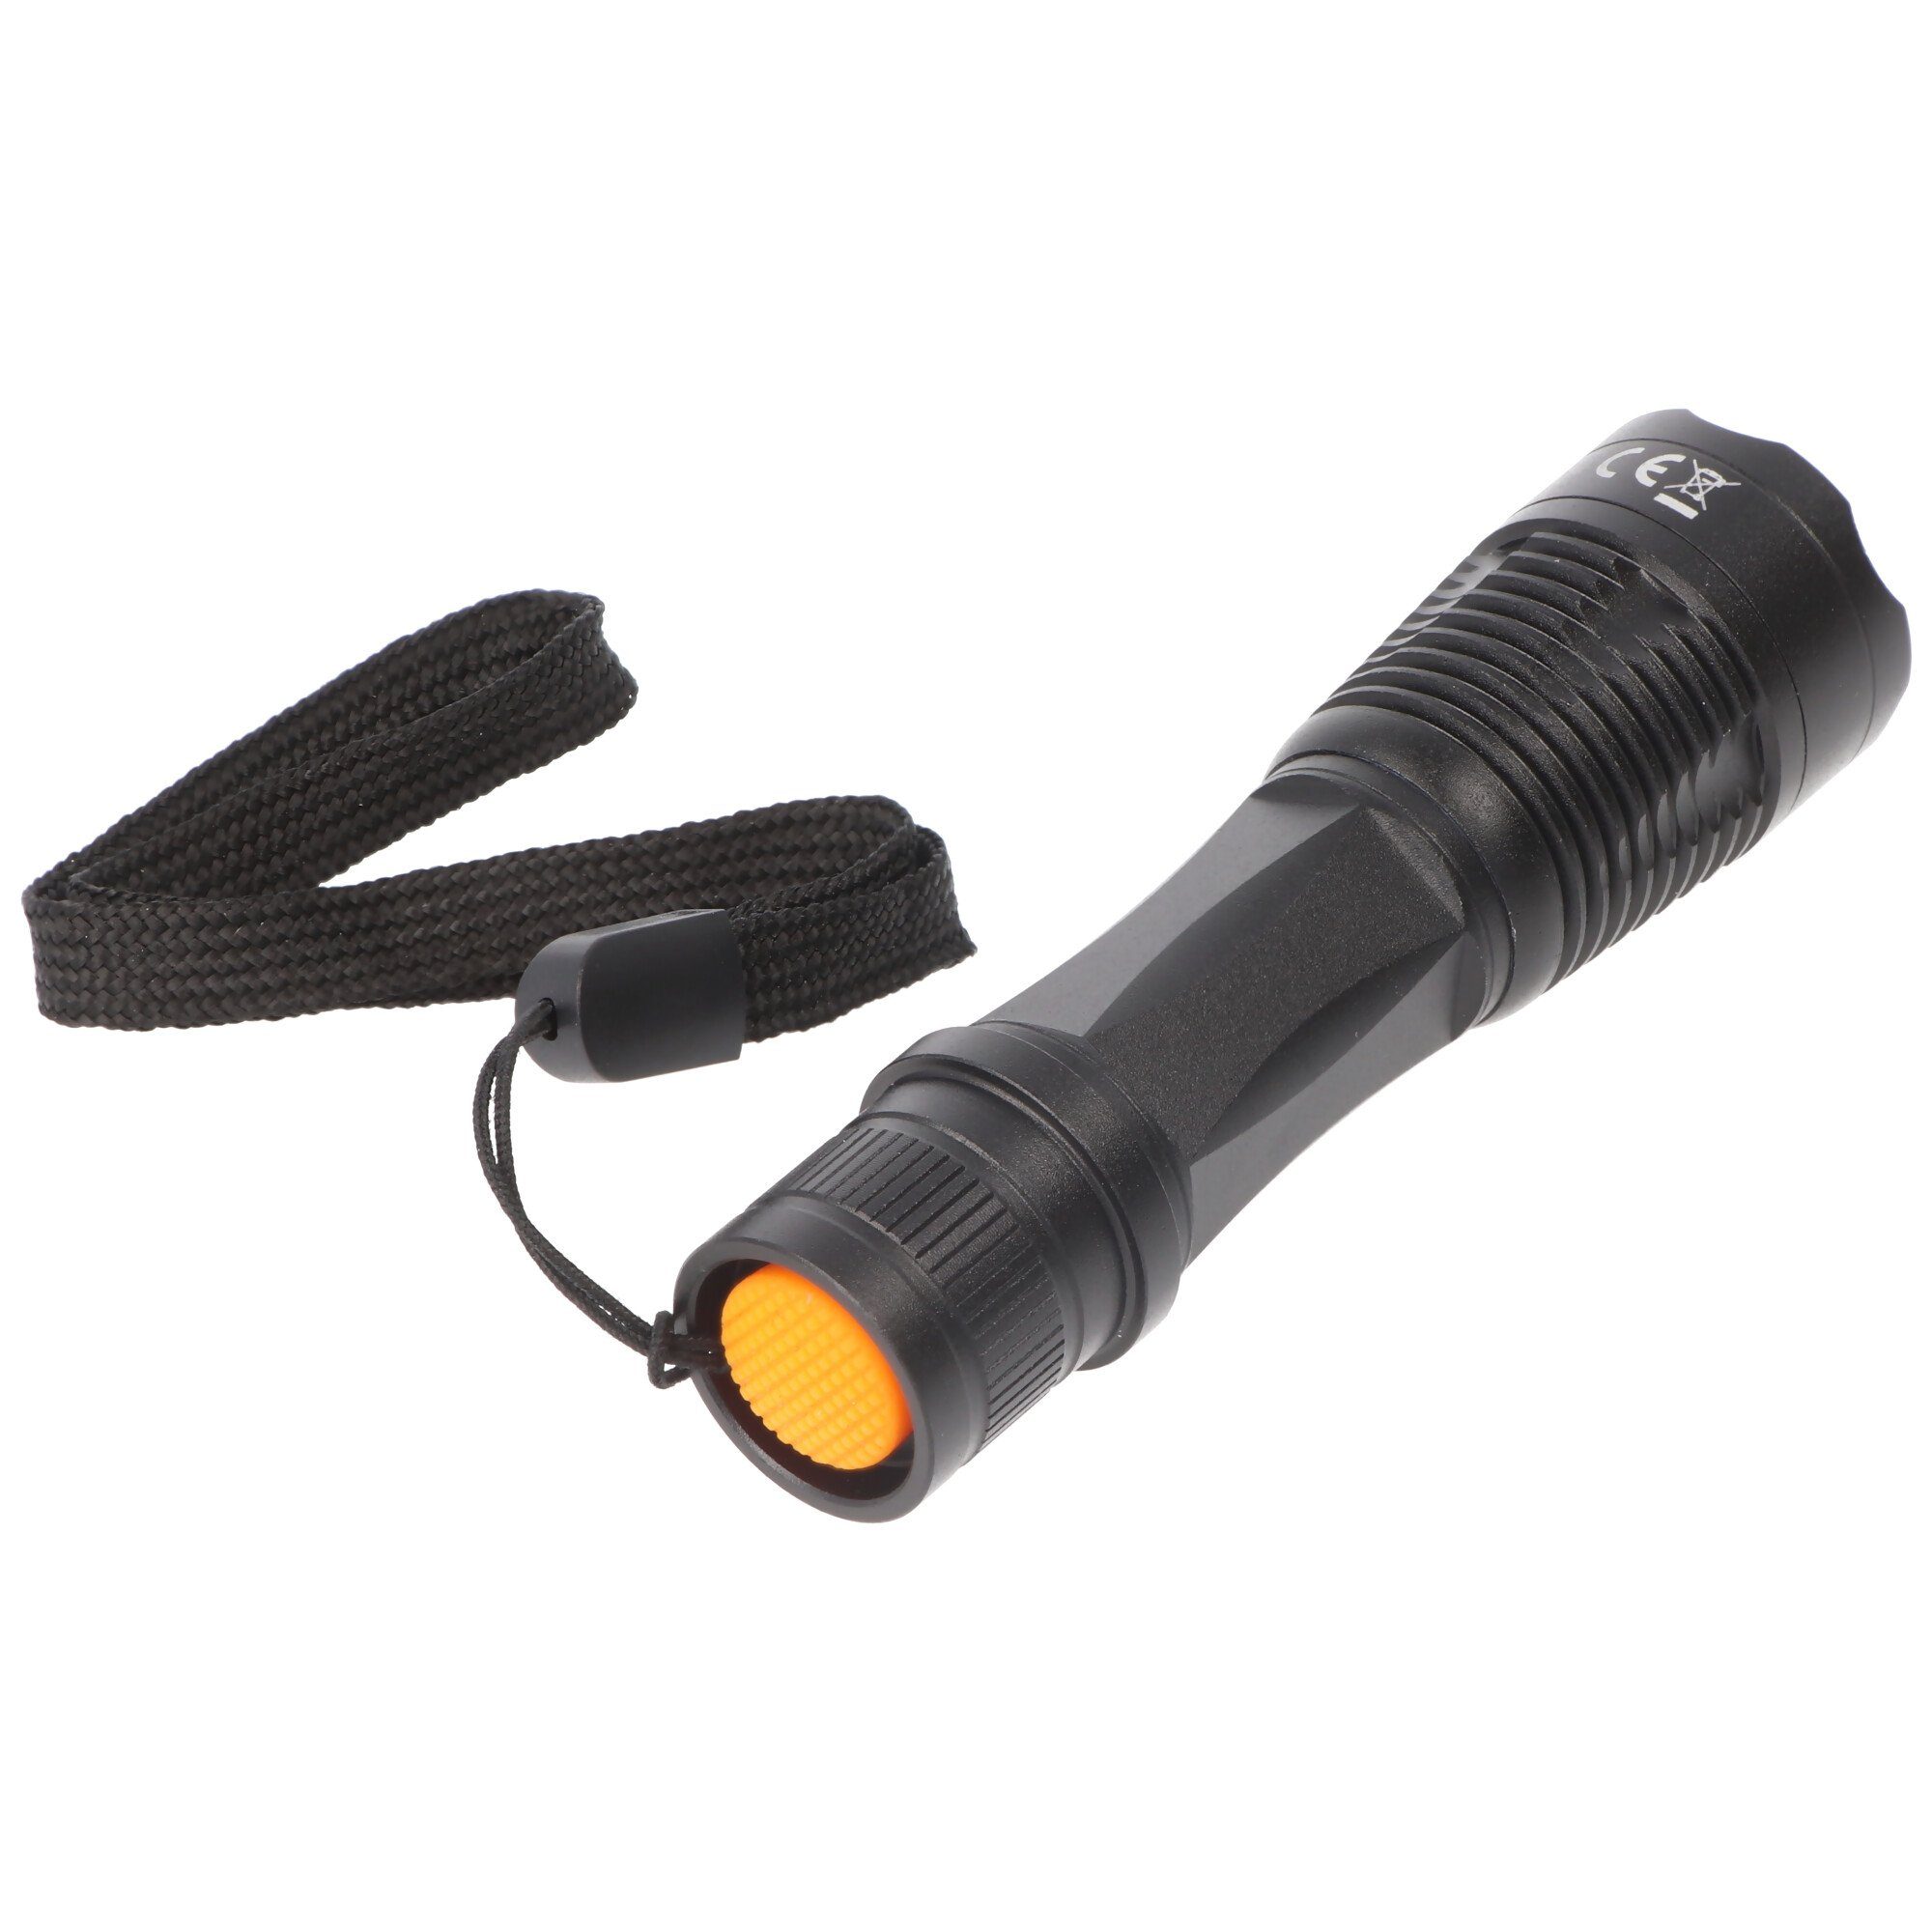 Alkaline Batterie schwarz inklusive LED LED Taschenlampe Arcas 1 Watt Taschenlampe